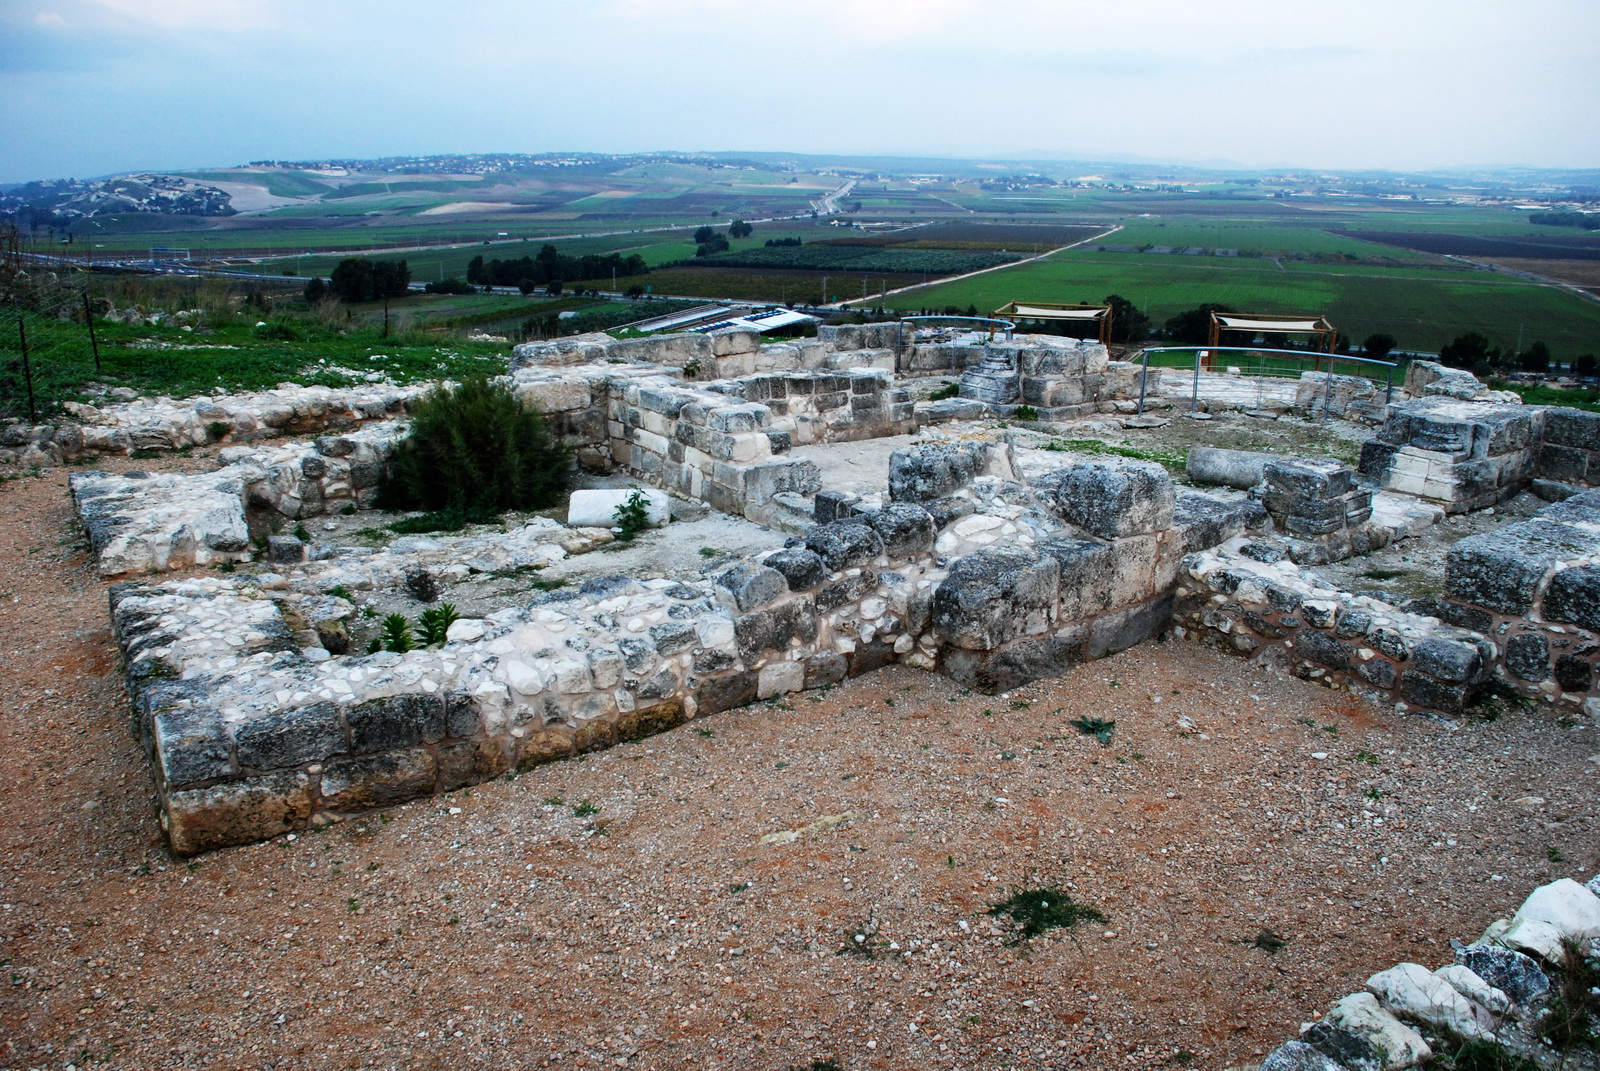 תל יקנעם - תל עם מימצאים לאורך אלפי שנים - מבט כללי על האתר